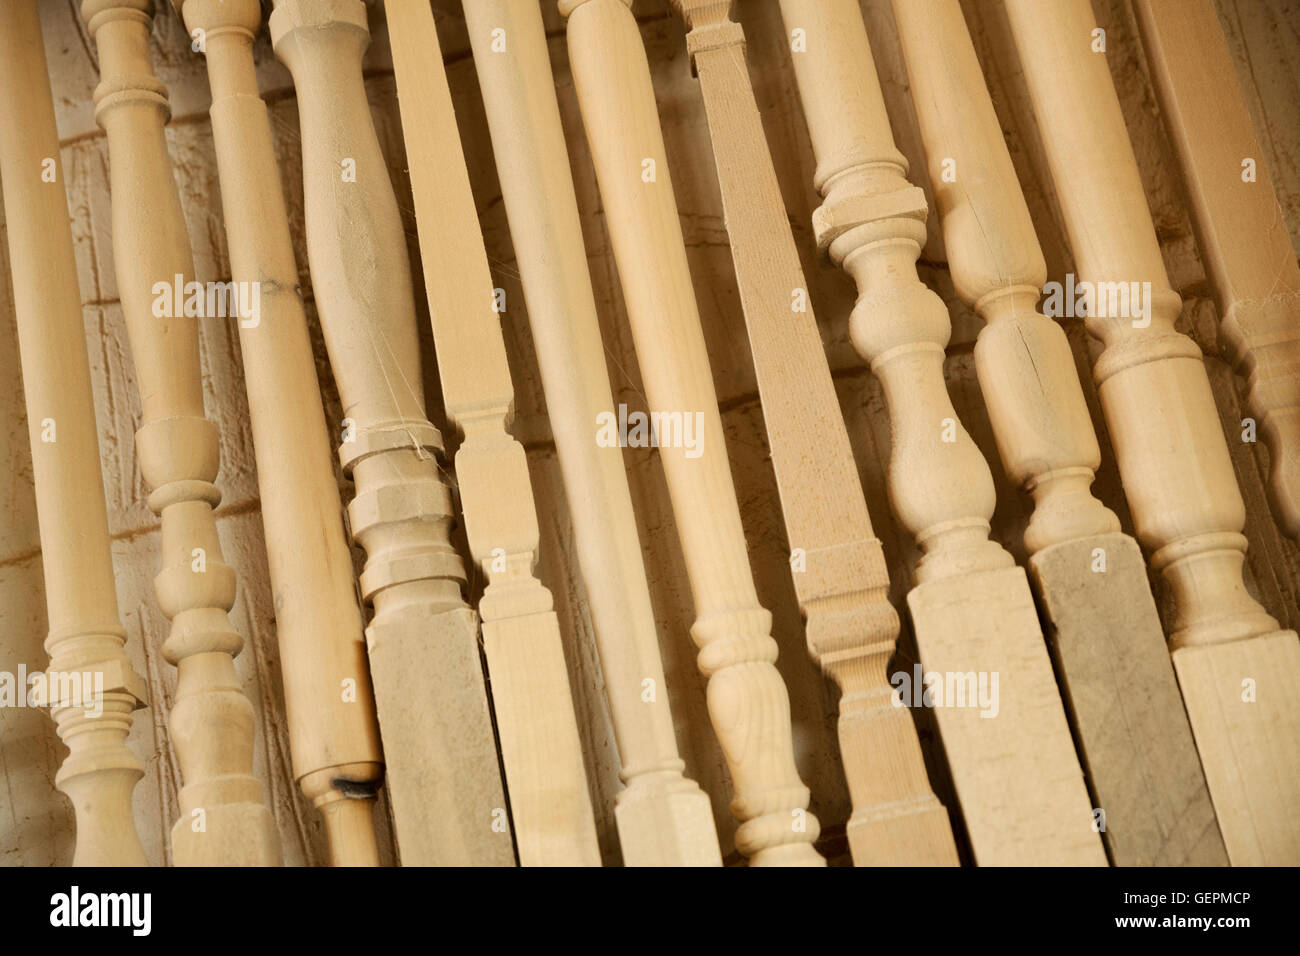 Nahaufnahme einer Auswahl von gedrehten hölzernen Möbelbeine mit verschiedenen Designs. Stockfoto